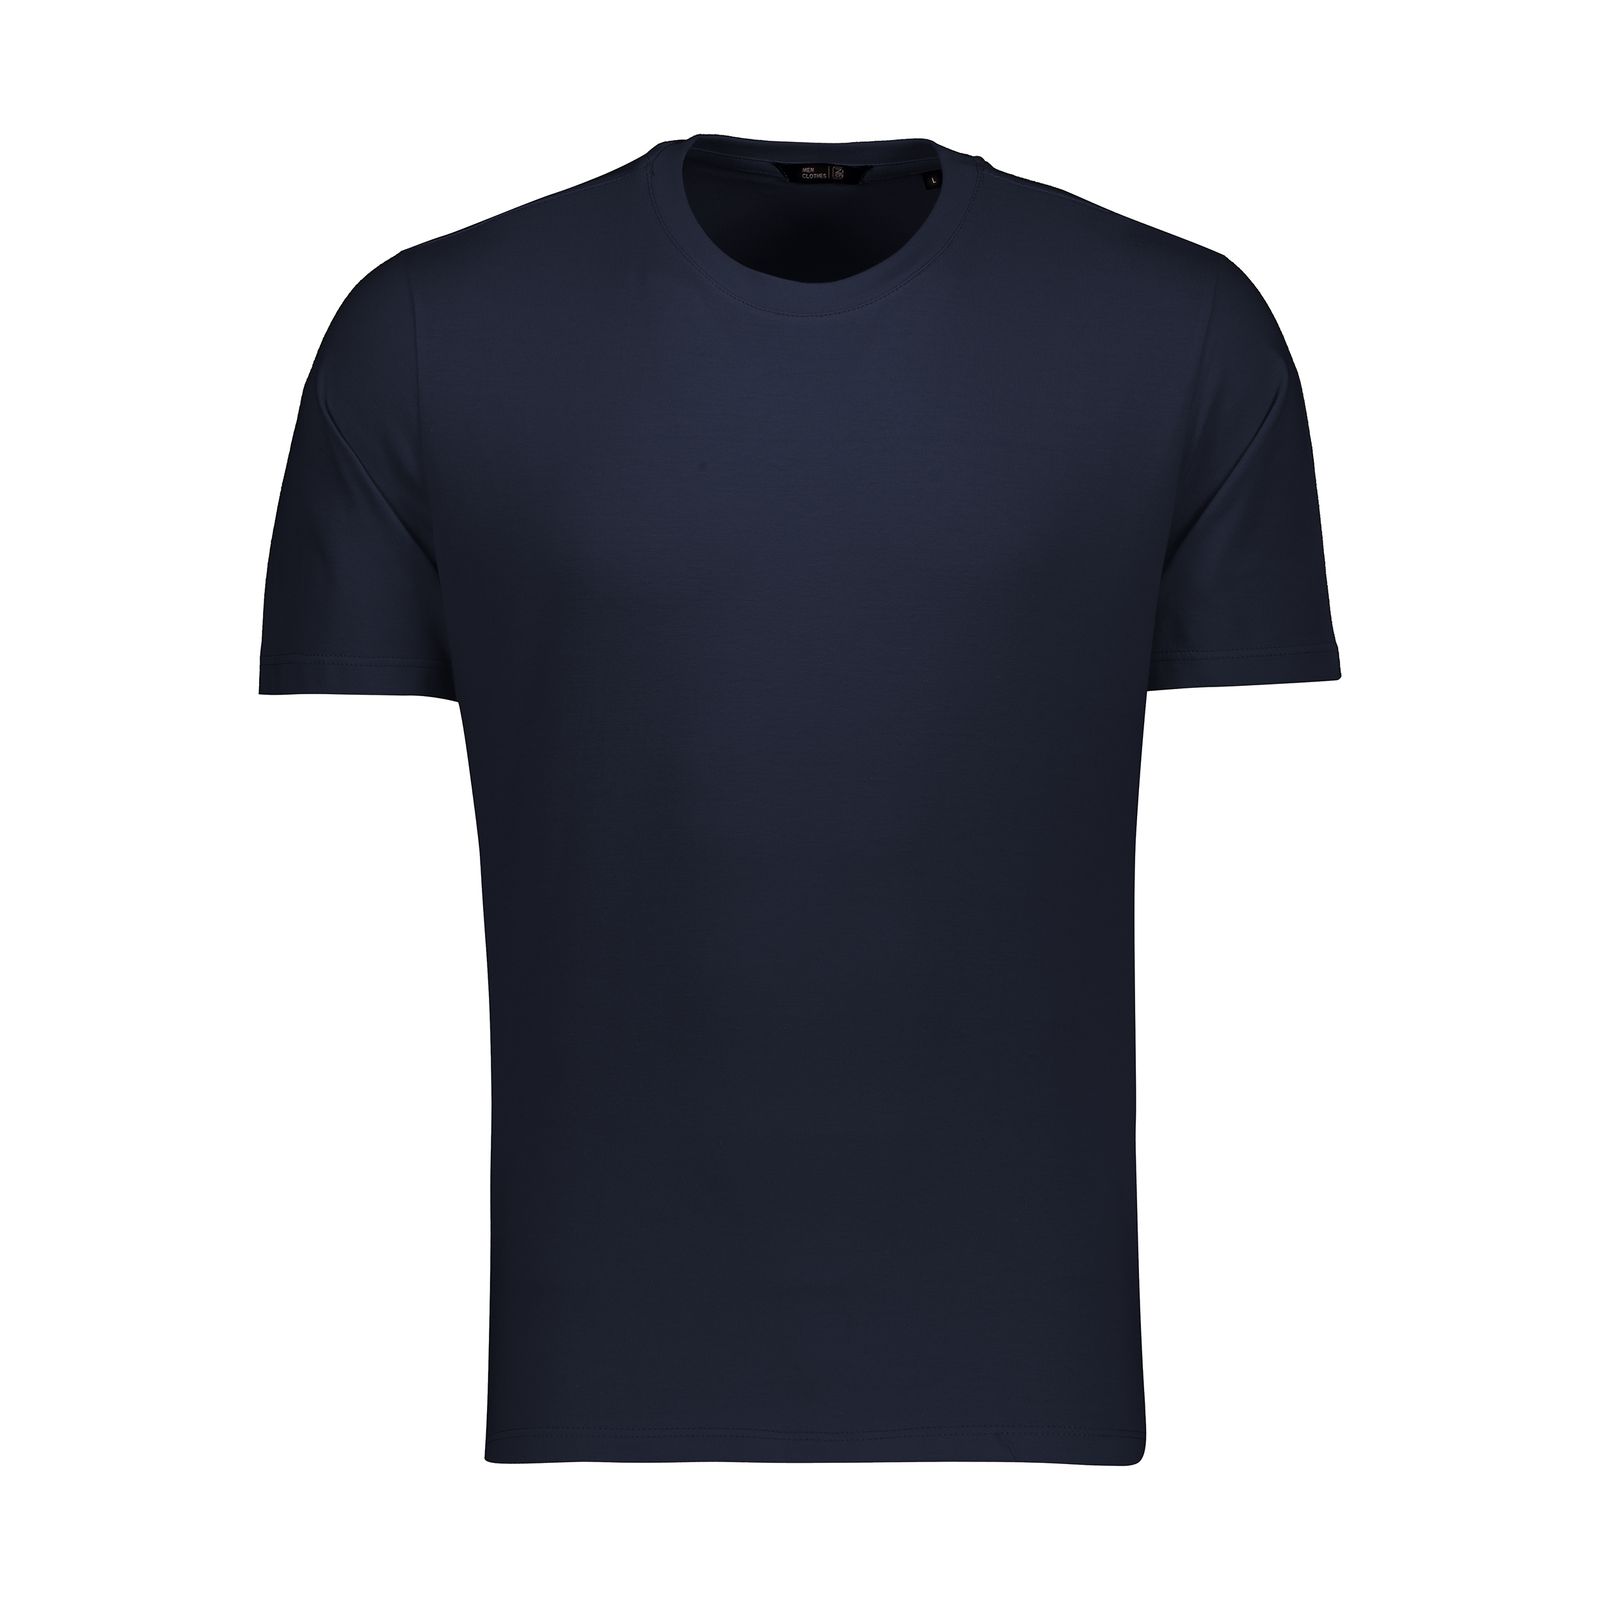 تی شرت آستین کوتاه مردانه زی سا مدل 153162059 -  - 1